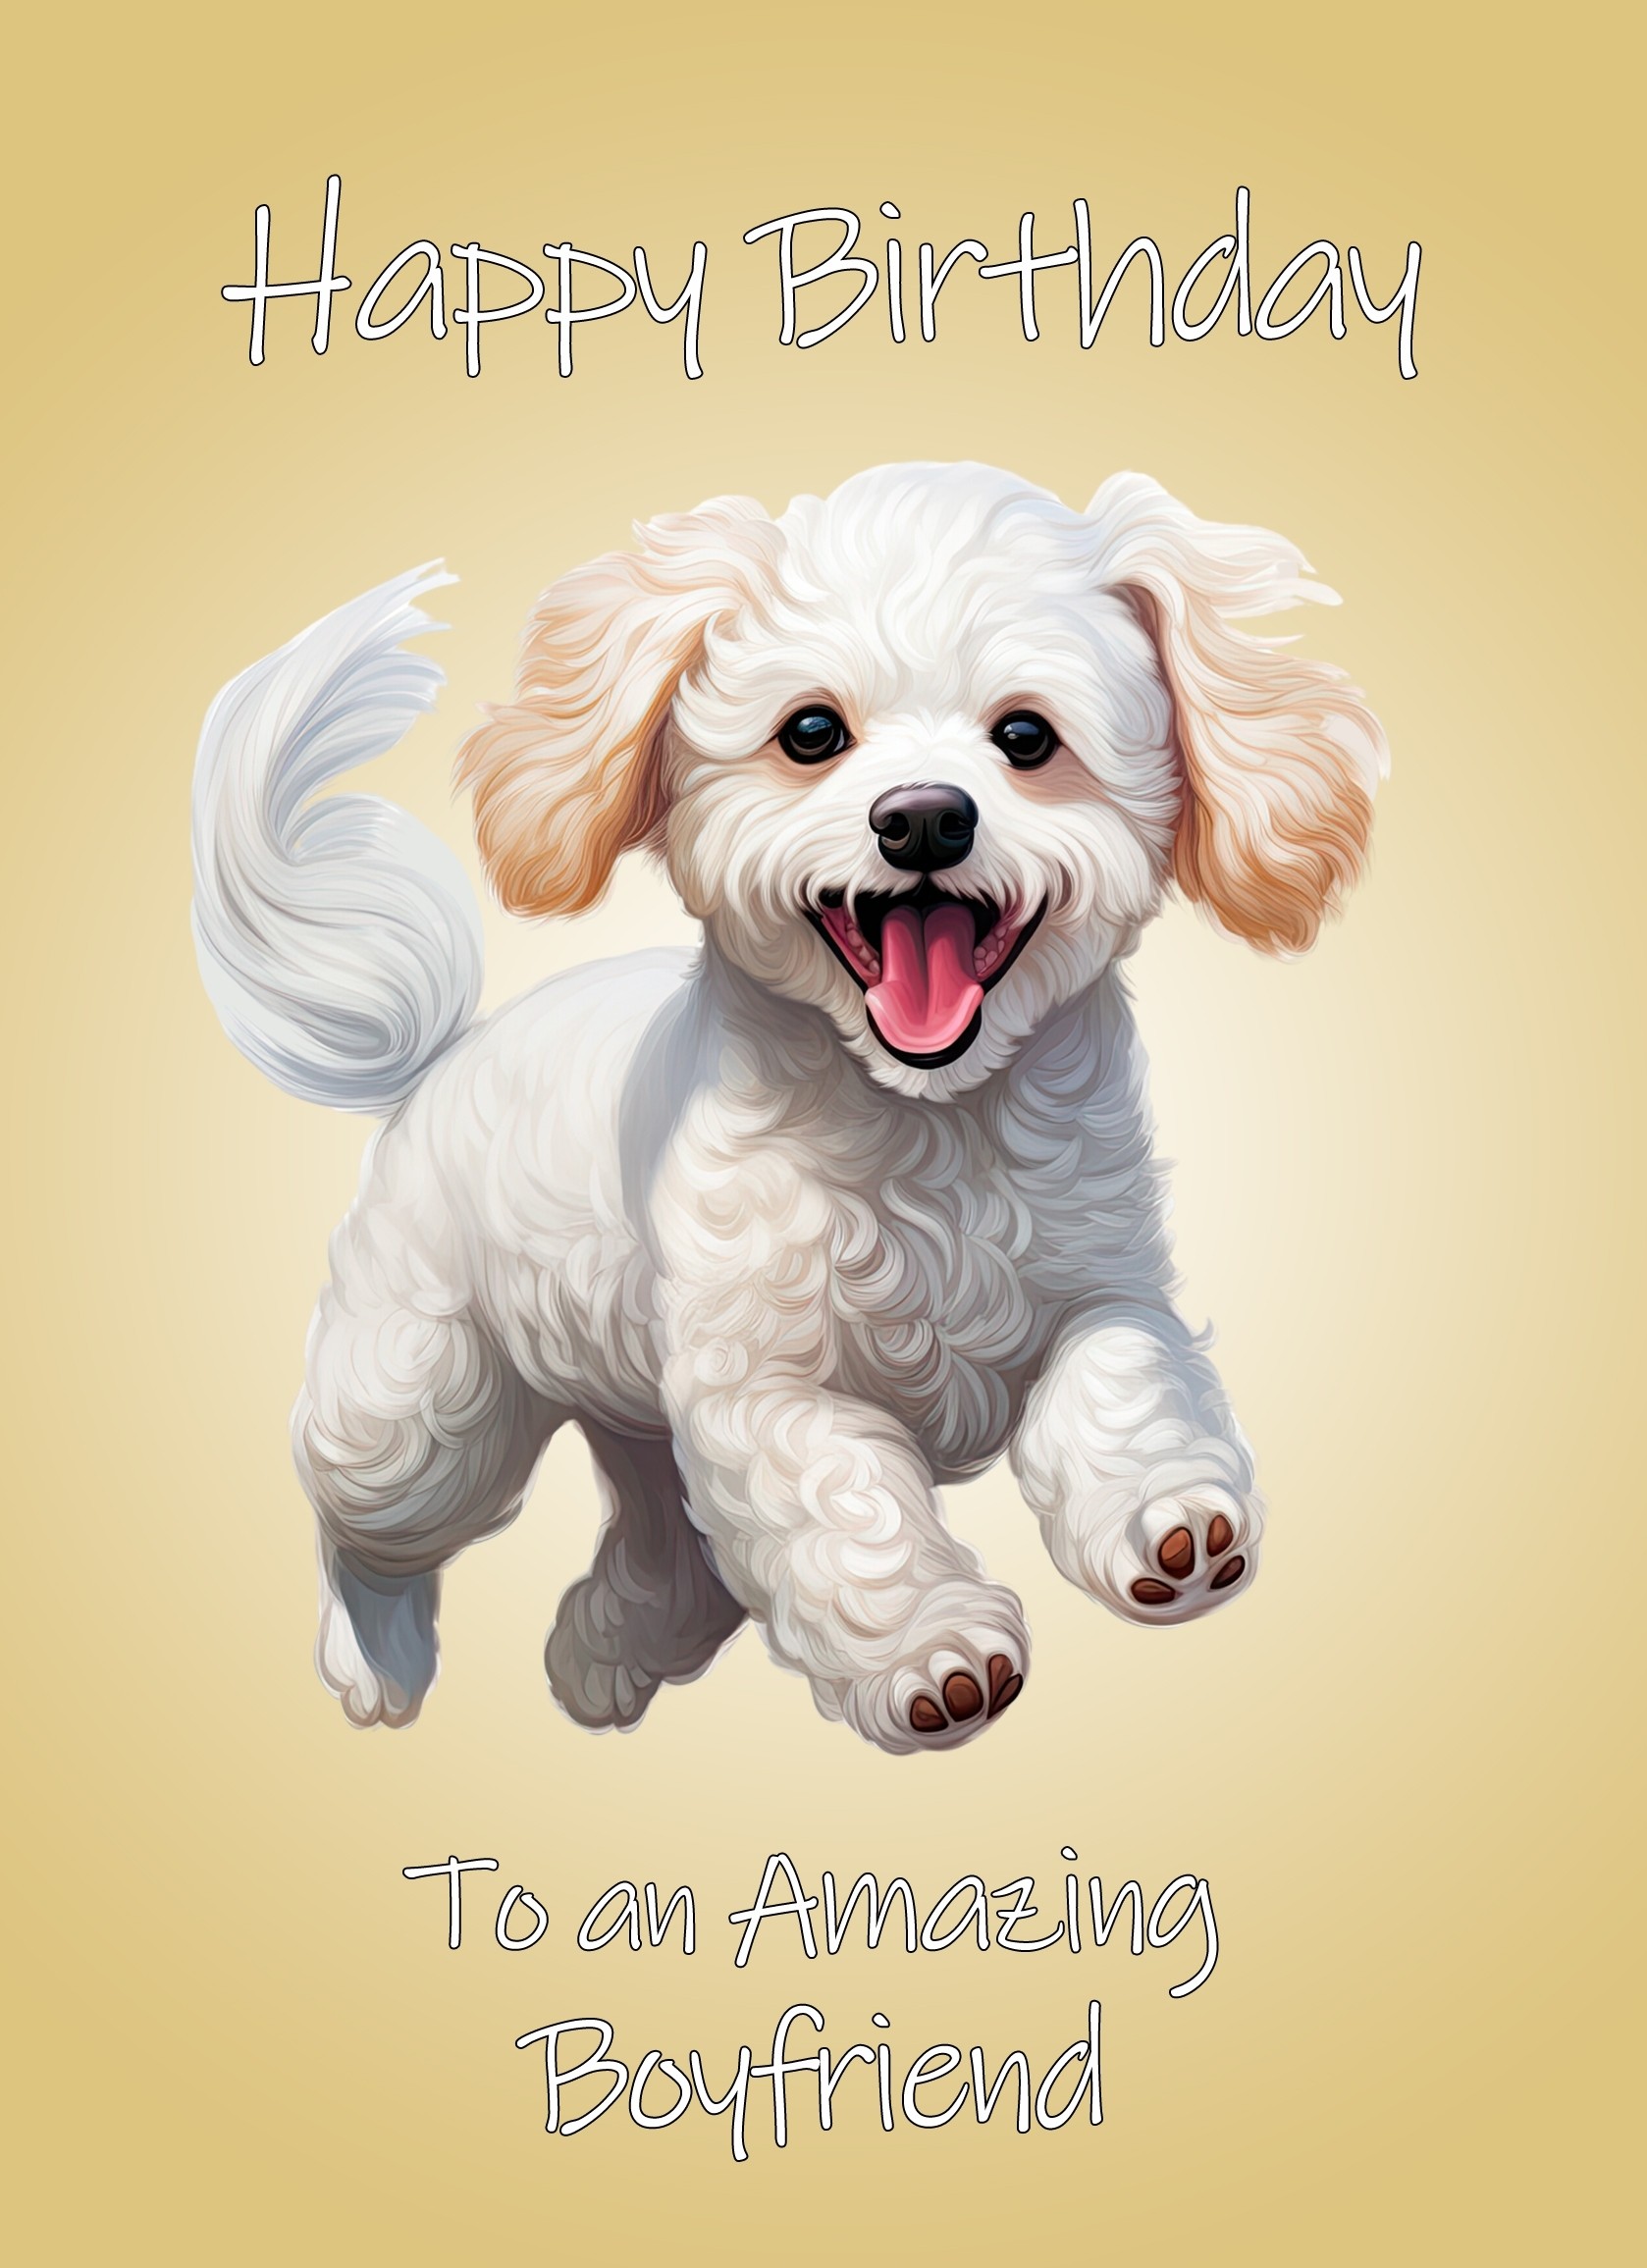 Poodle Dog Birthday Card For Boyfriend